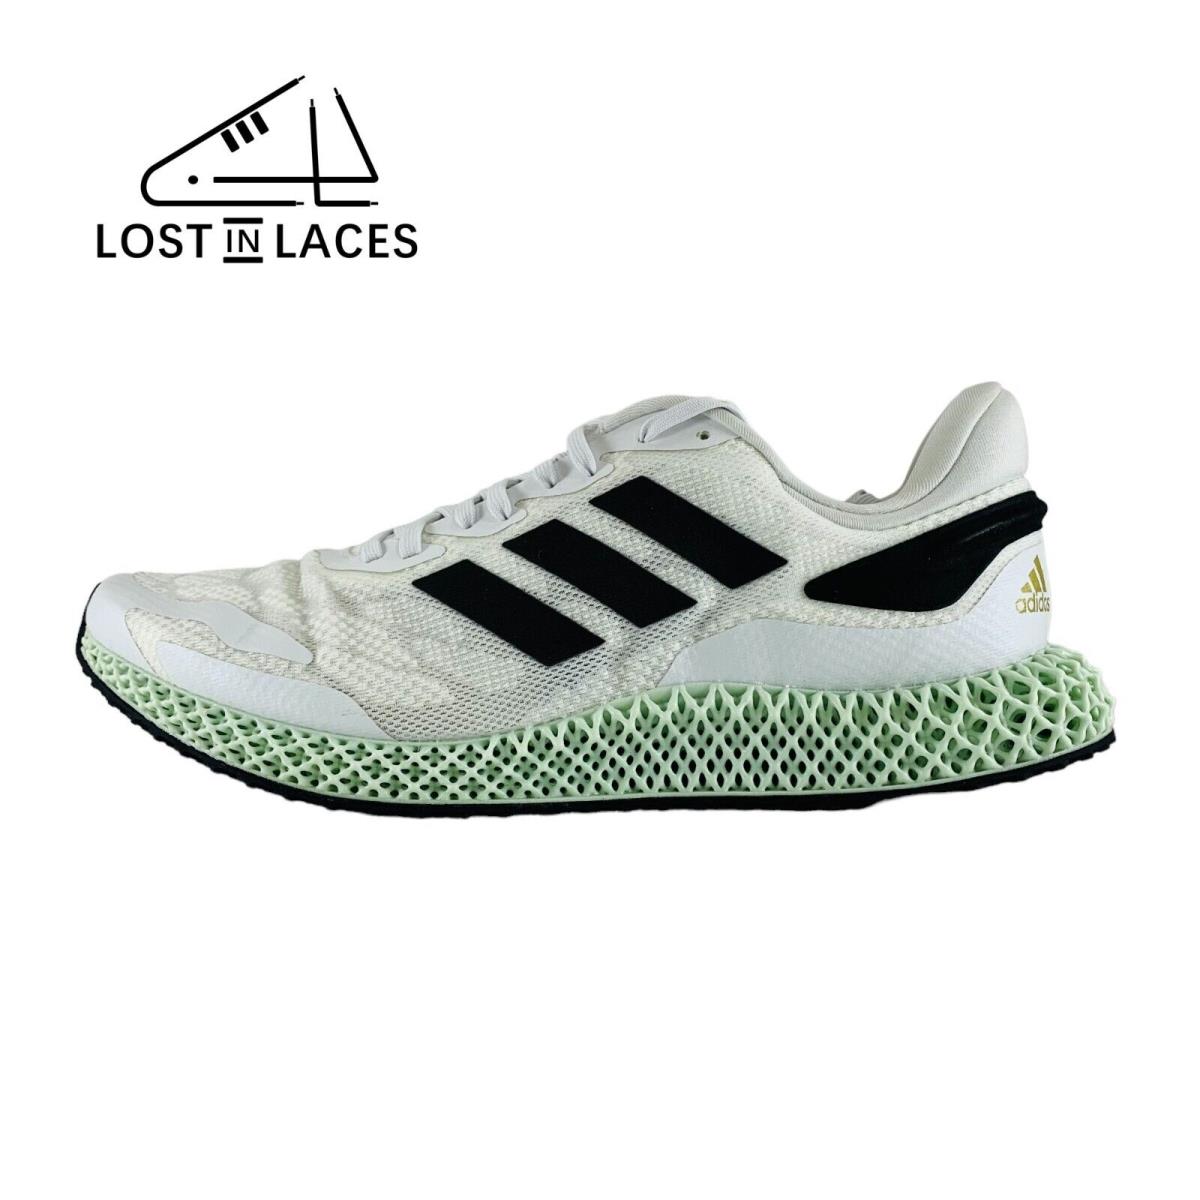 Adidas 4D Runner 1.0 White Black Sneakers Running Shoes EG6264 Men`s Sizes